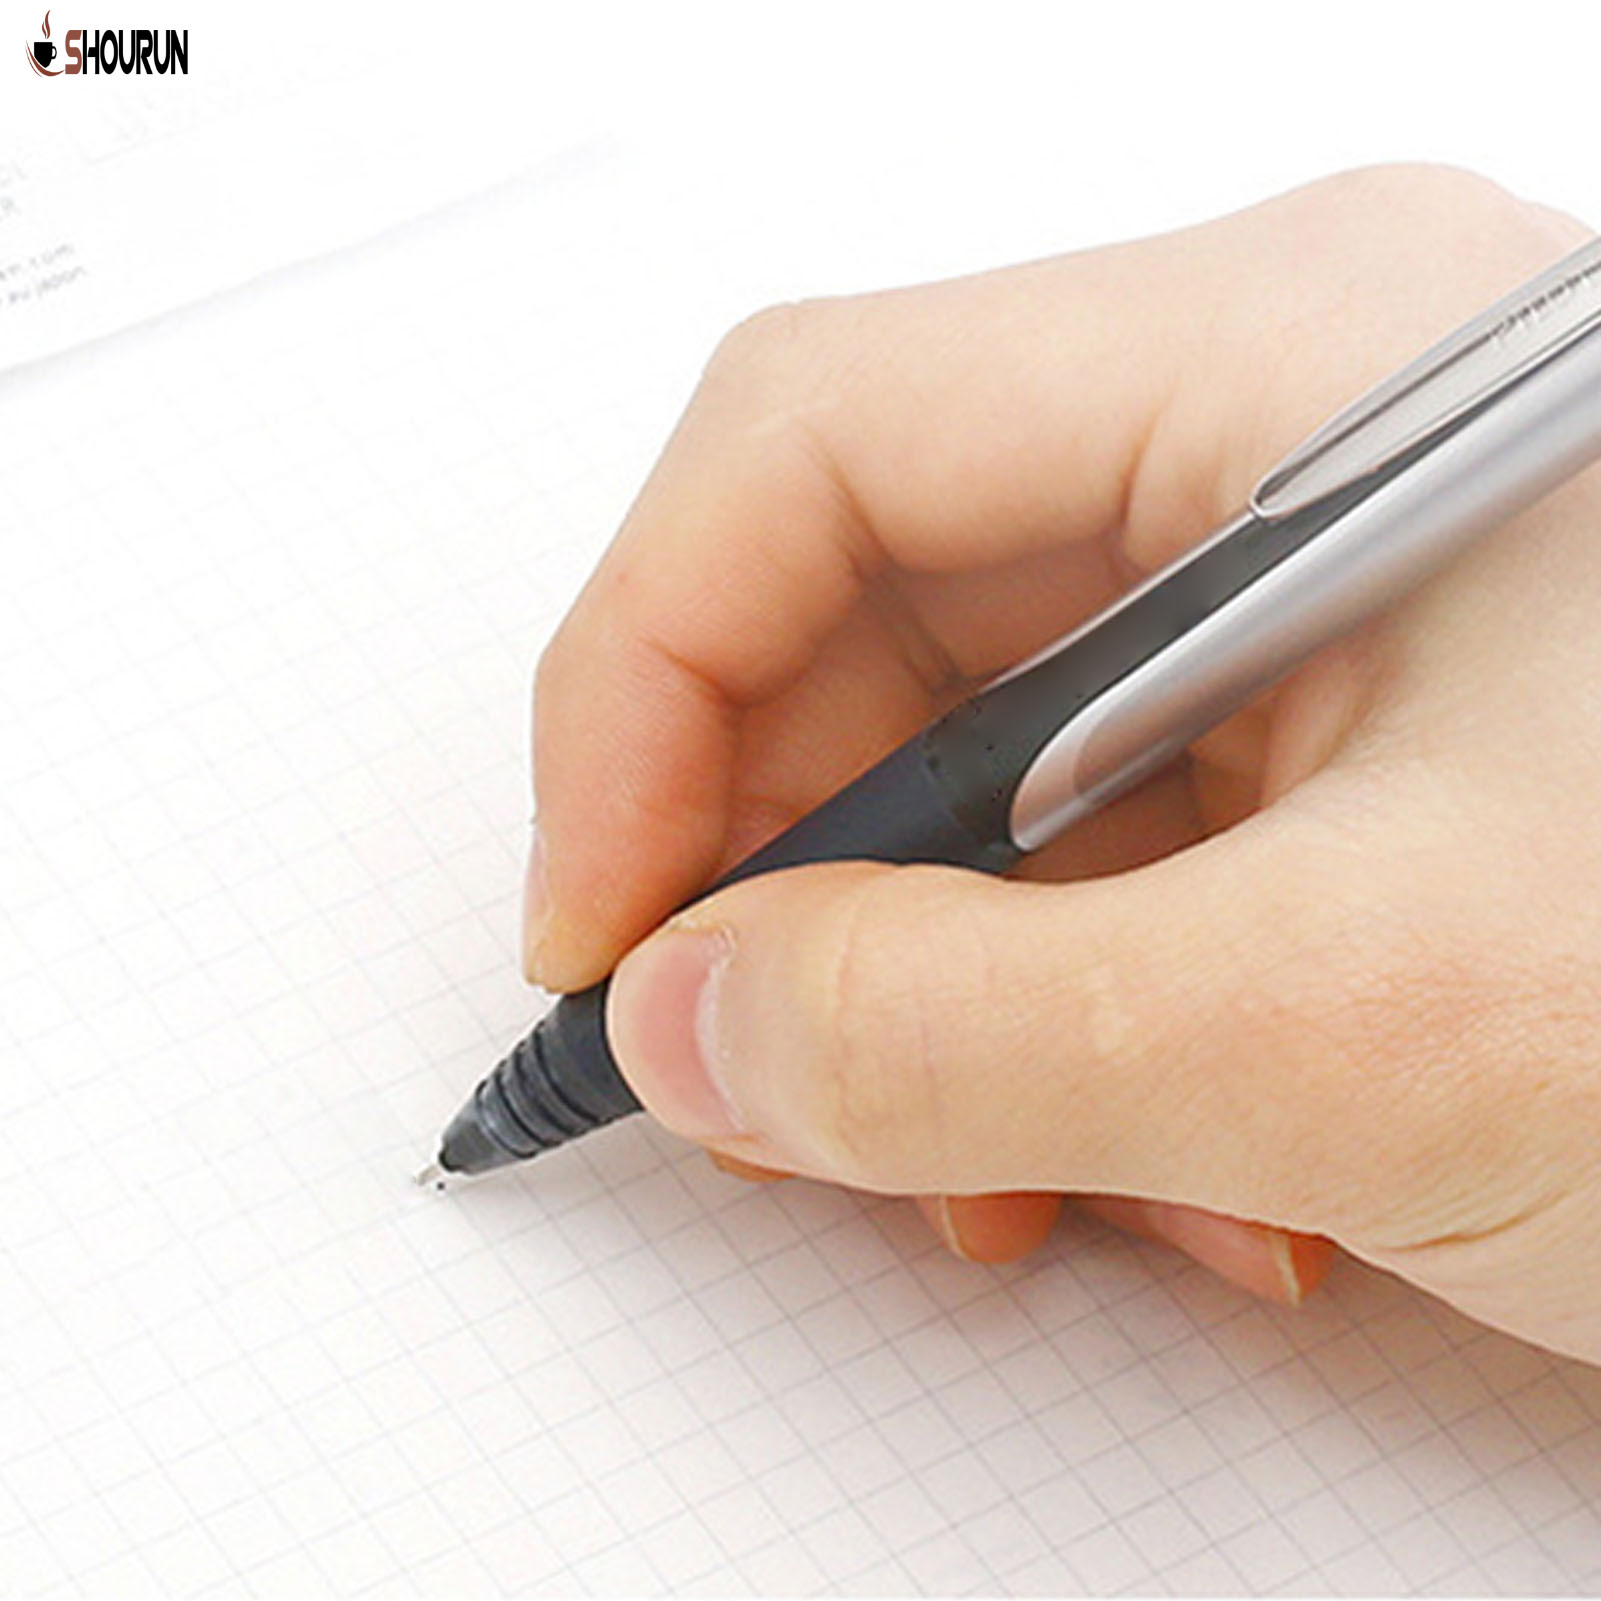 Sn 10pcs 1.0mm Bút mực nước Refill xanh mực nước màu đen ruột bút cho văn